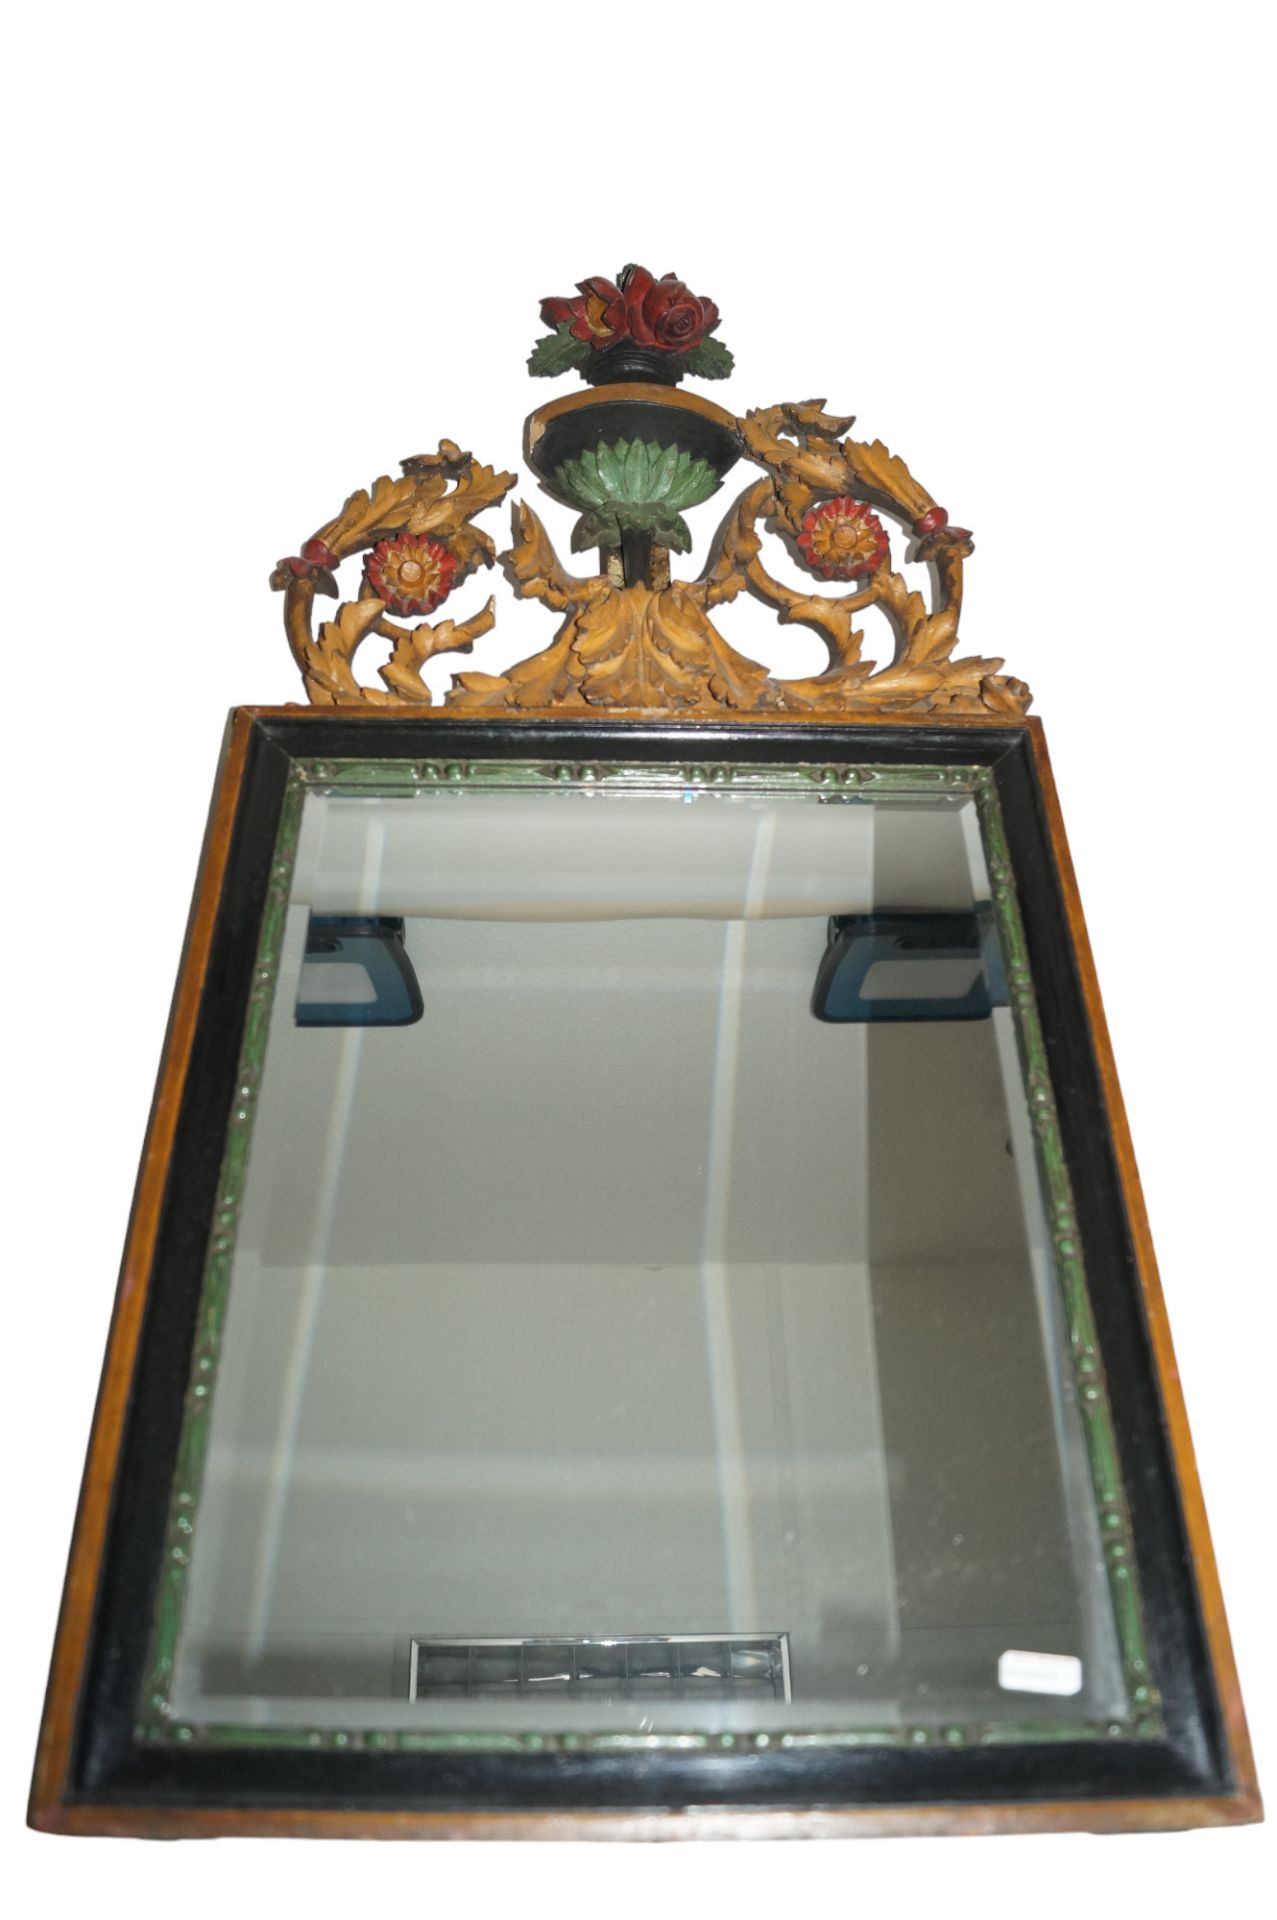 Kleiner Spiegel mit aufgesetzter Bekrönung; vermutlich ursprünglich nicht zusammengehörig; Bekrönun